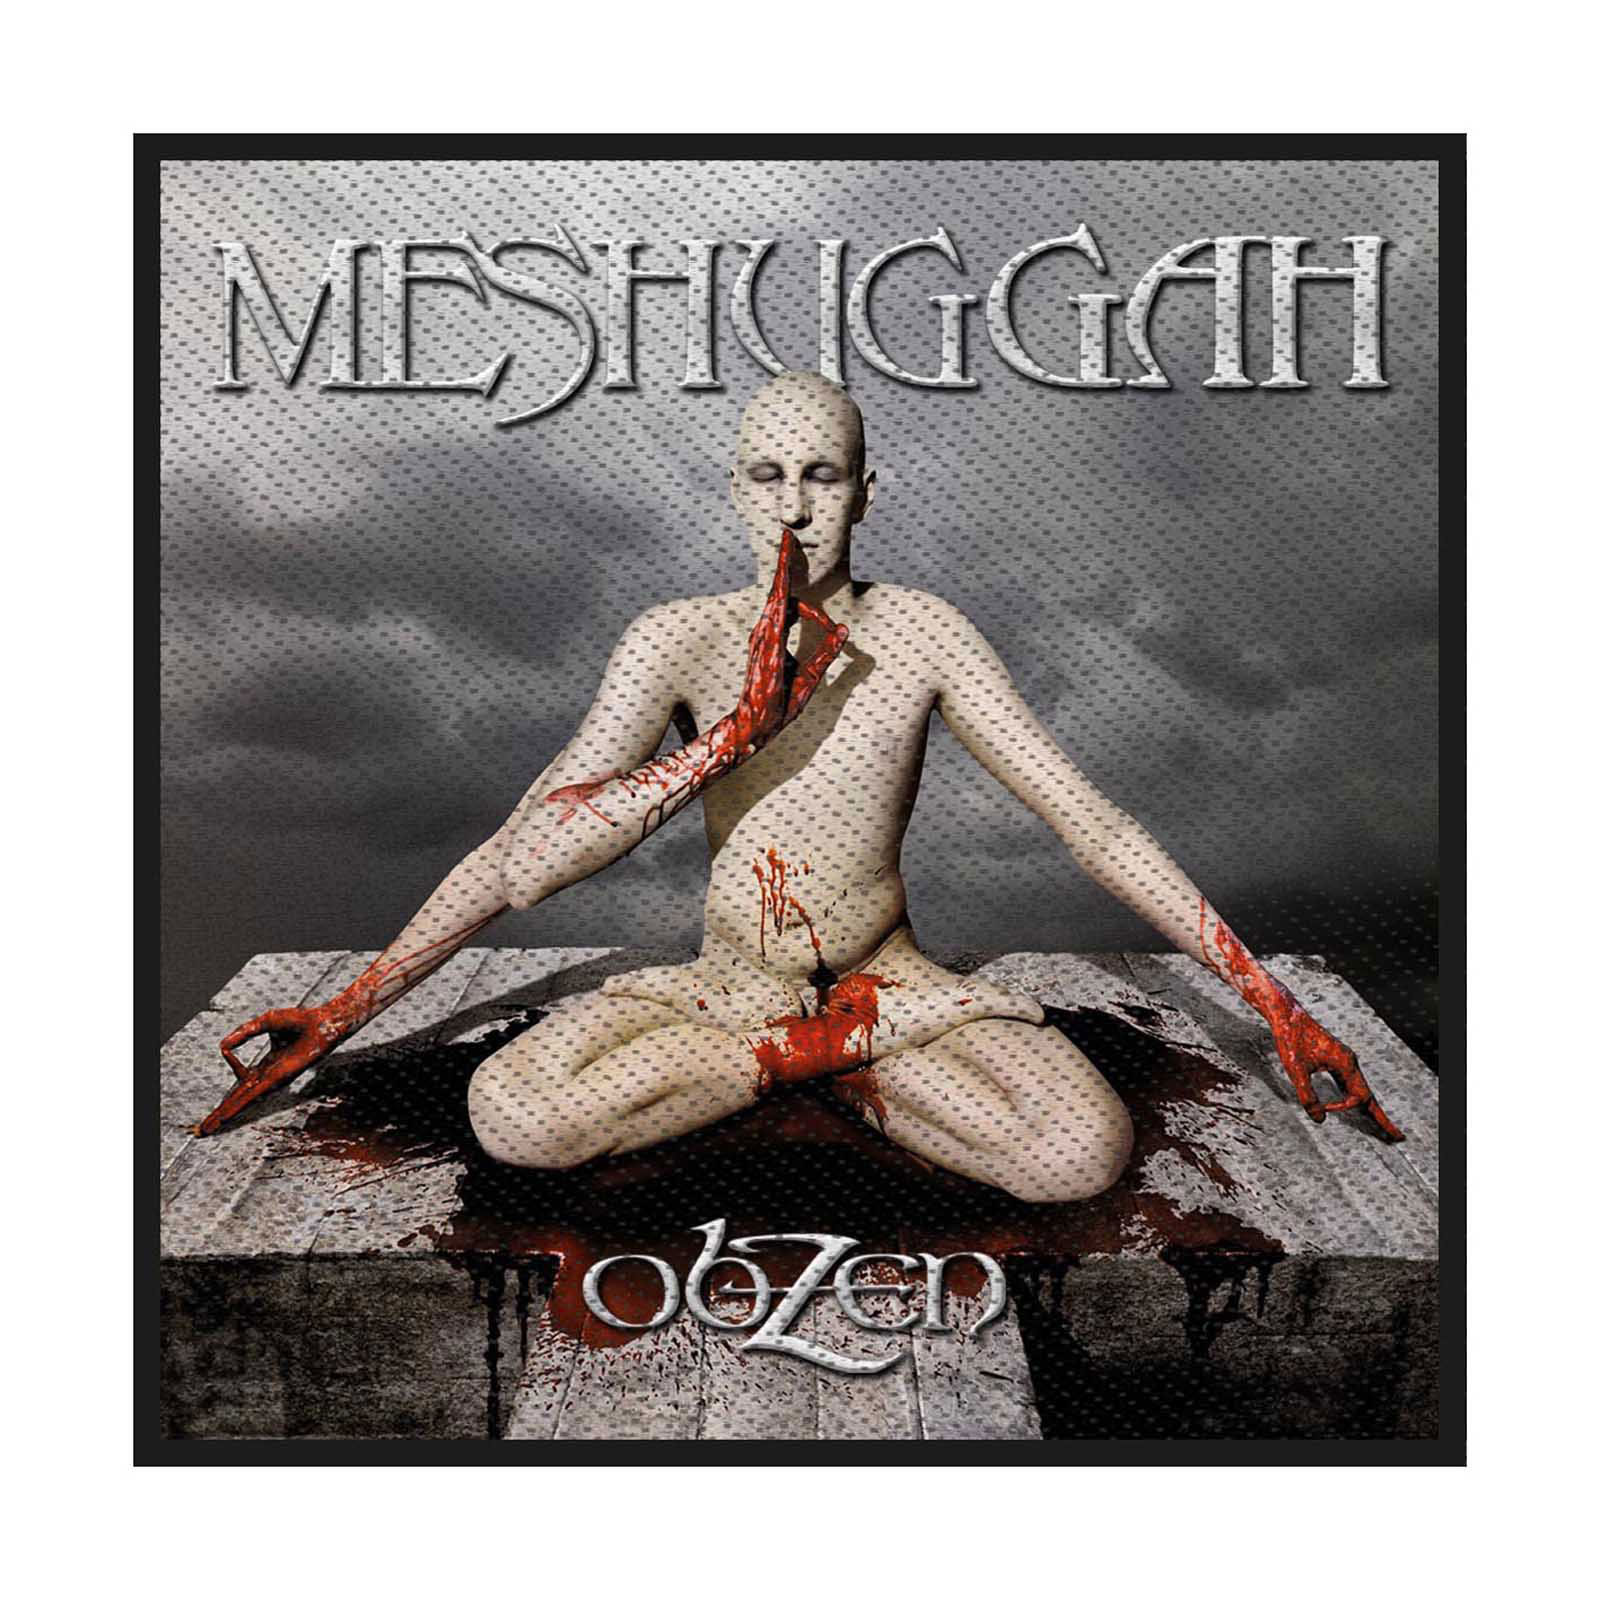 (VK[) Meshuggah ItBVi Obzen by Dn pb` yCOʔ́z